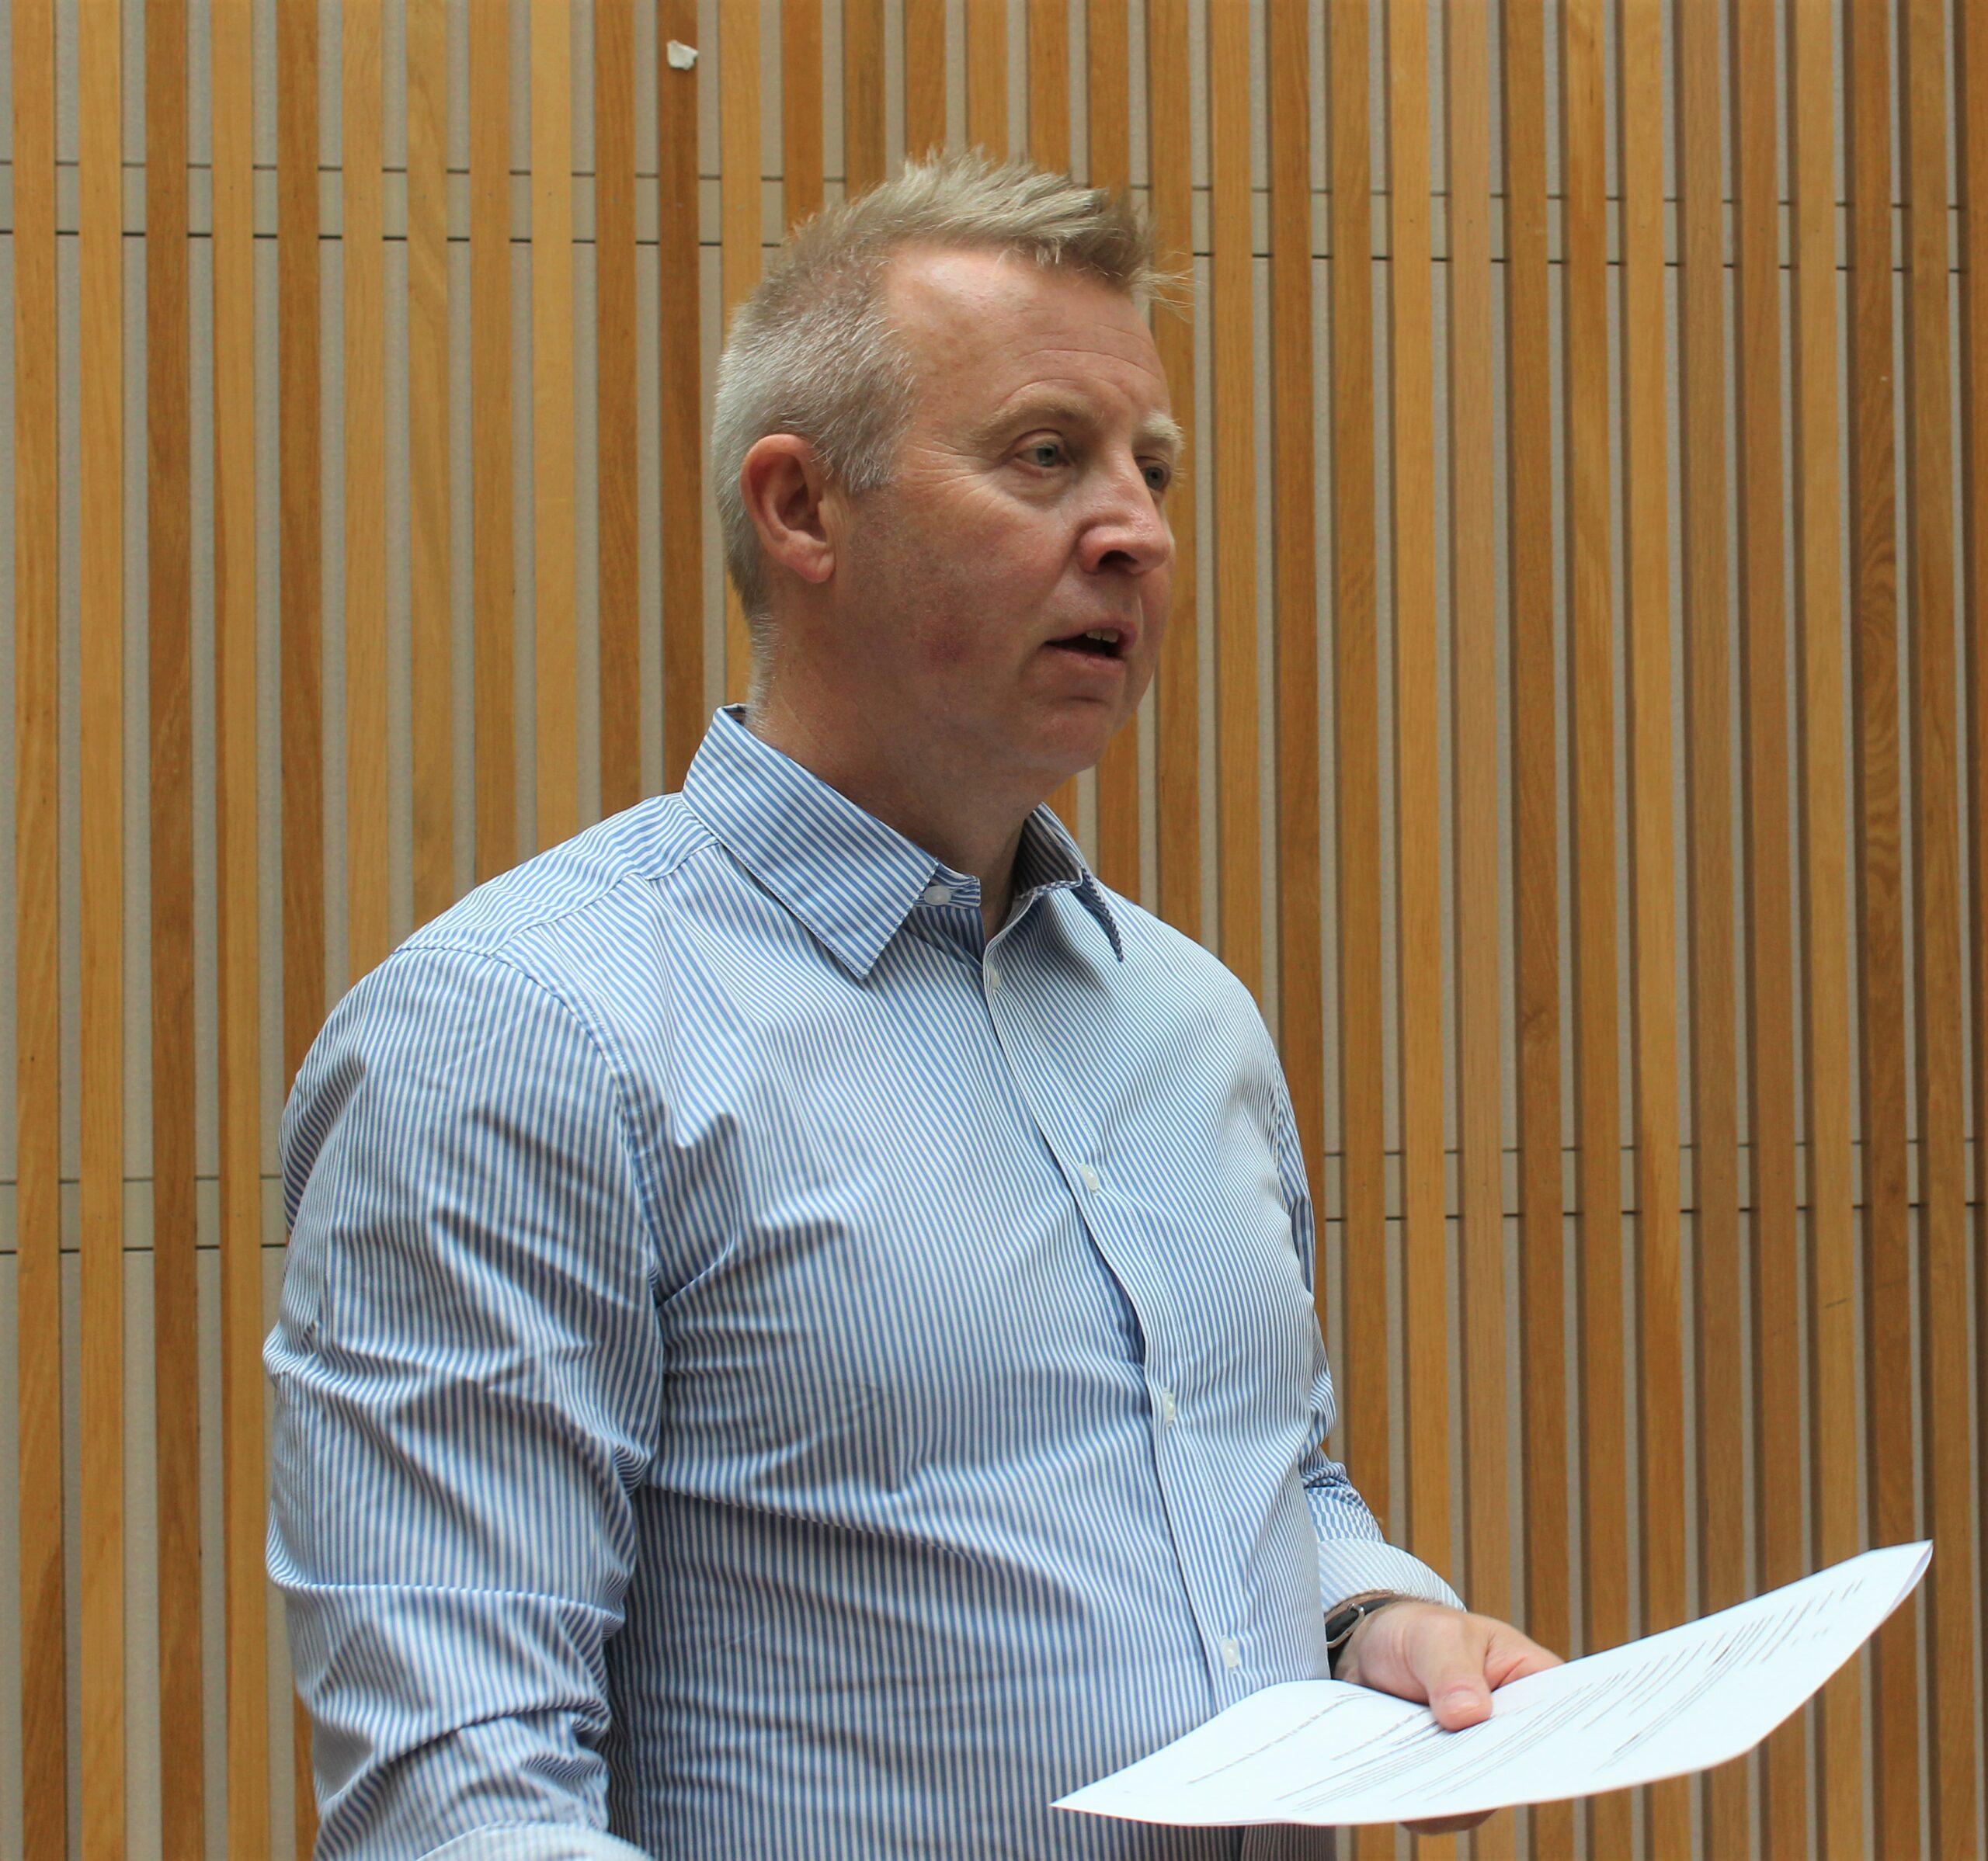 Forbundsleder Frode Alfheim ledet forhandlingene på elektrokjemisk overenskomst. Foto: Johnny Håvik.